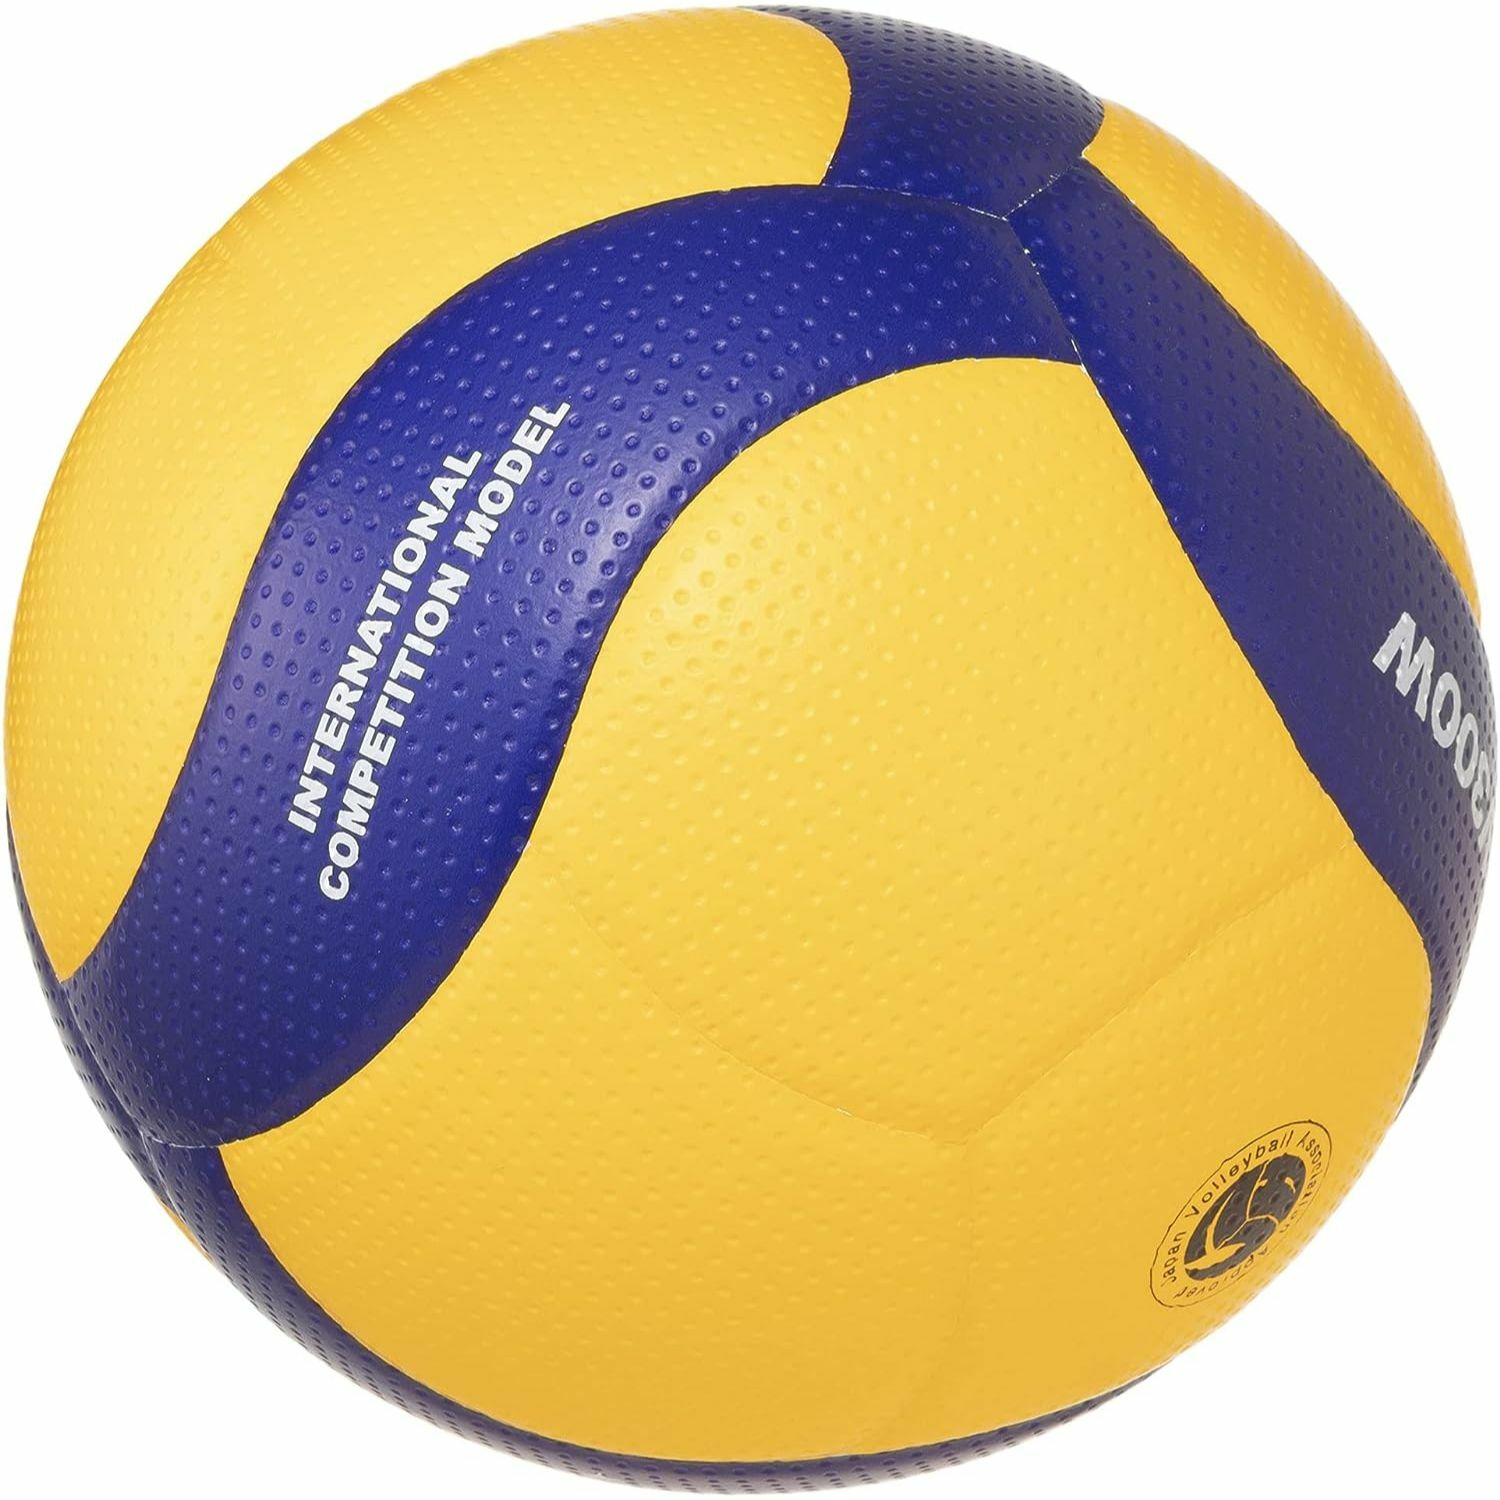 【運動族人】MIKASA V300W 5號排球國際公認球Size 5 黃色/藍色 